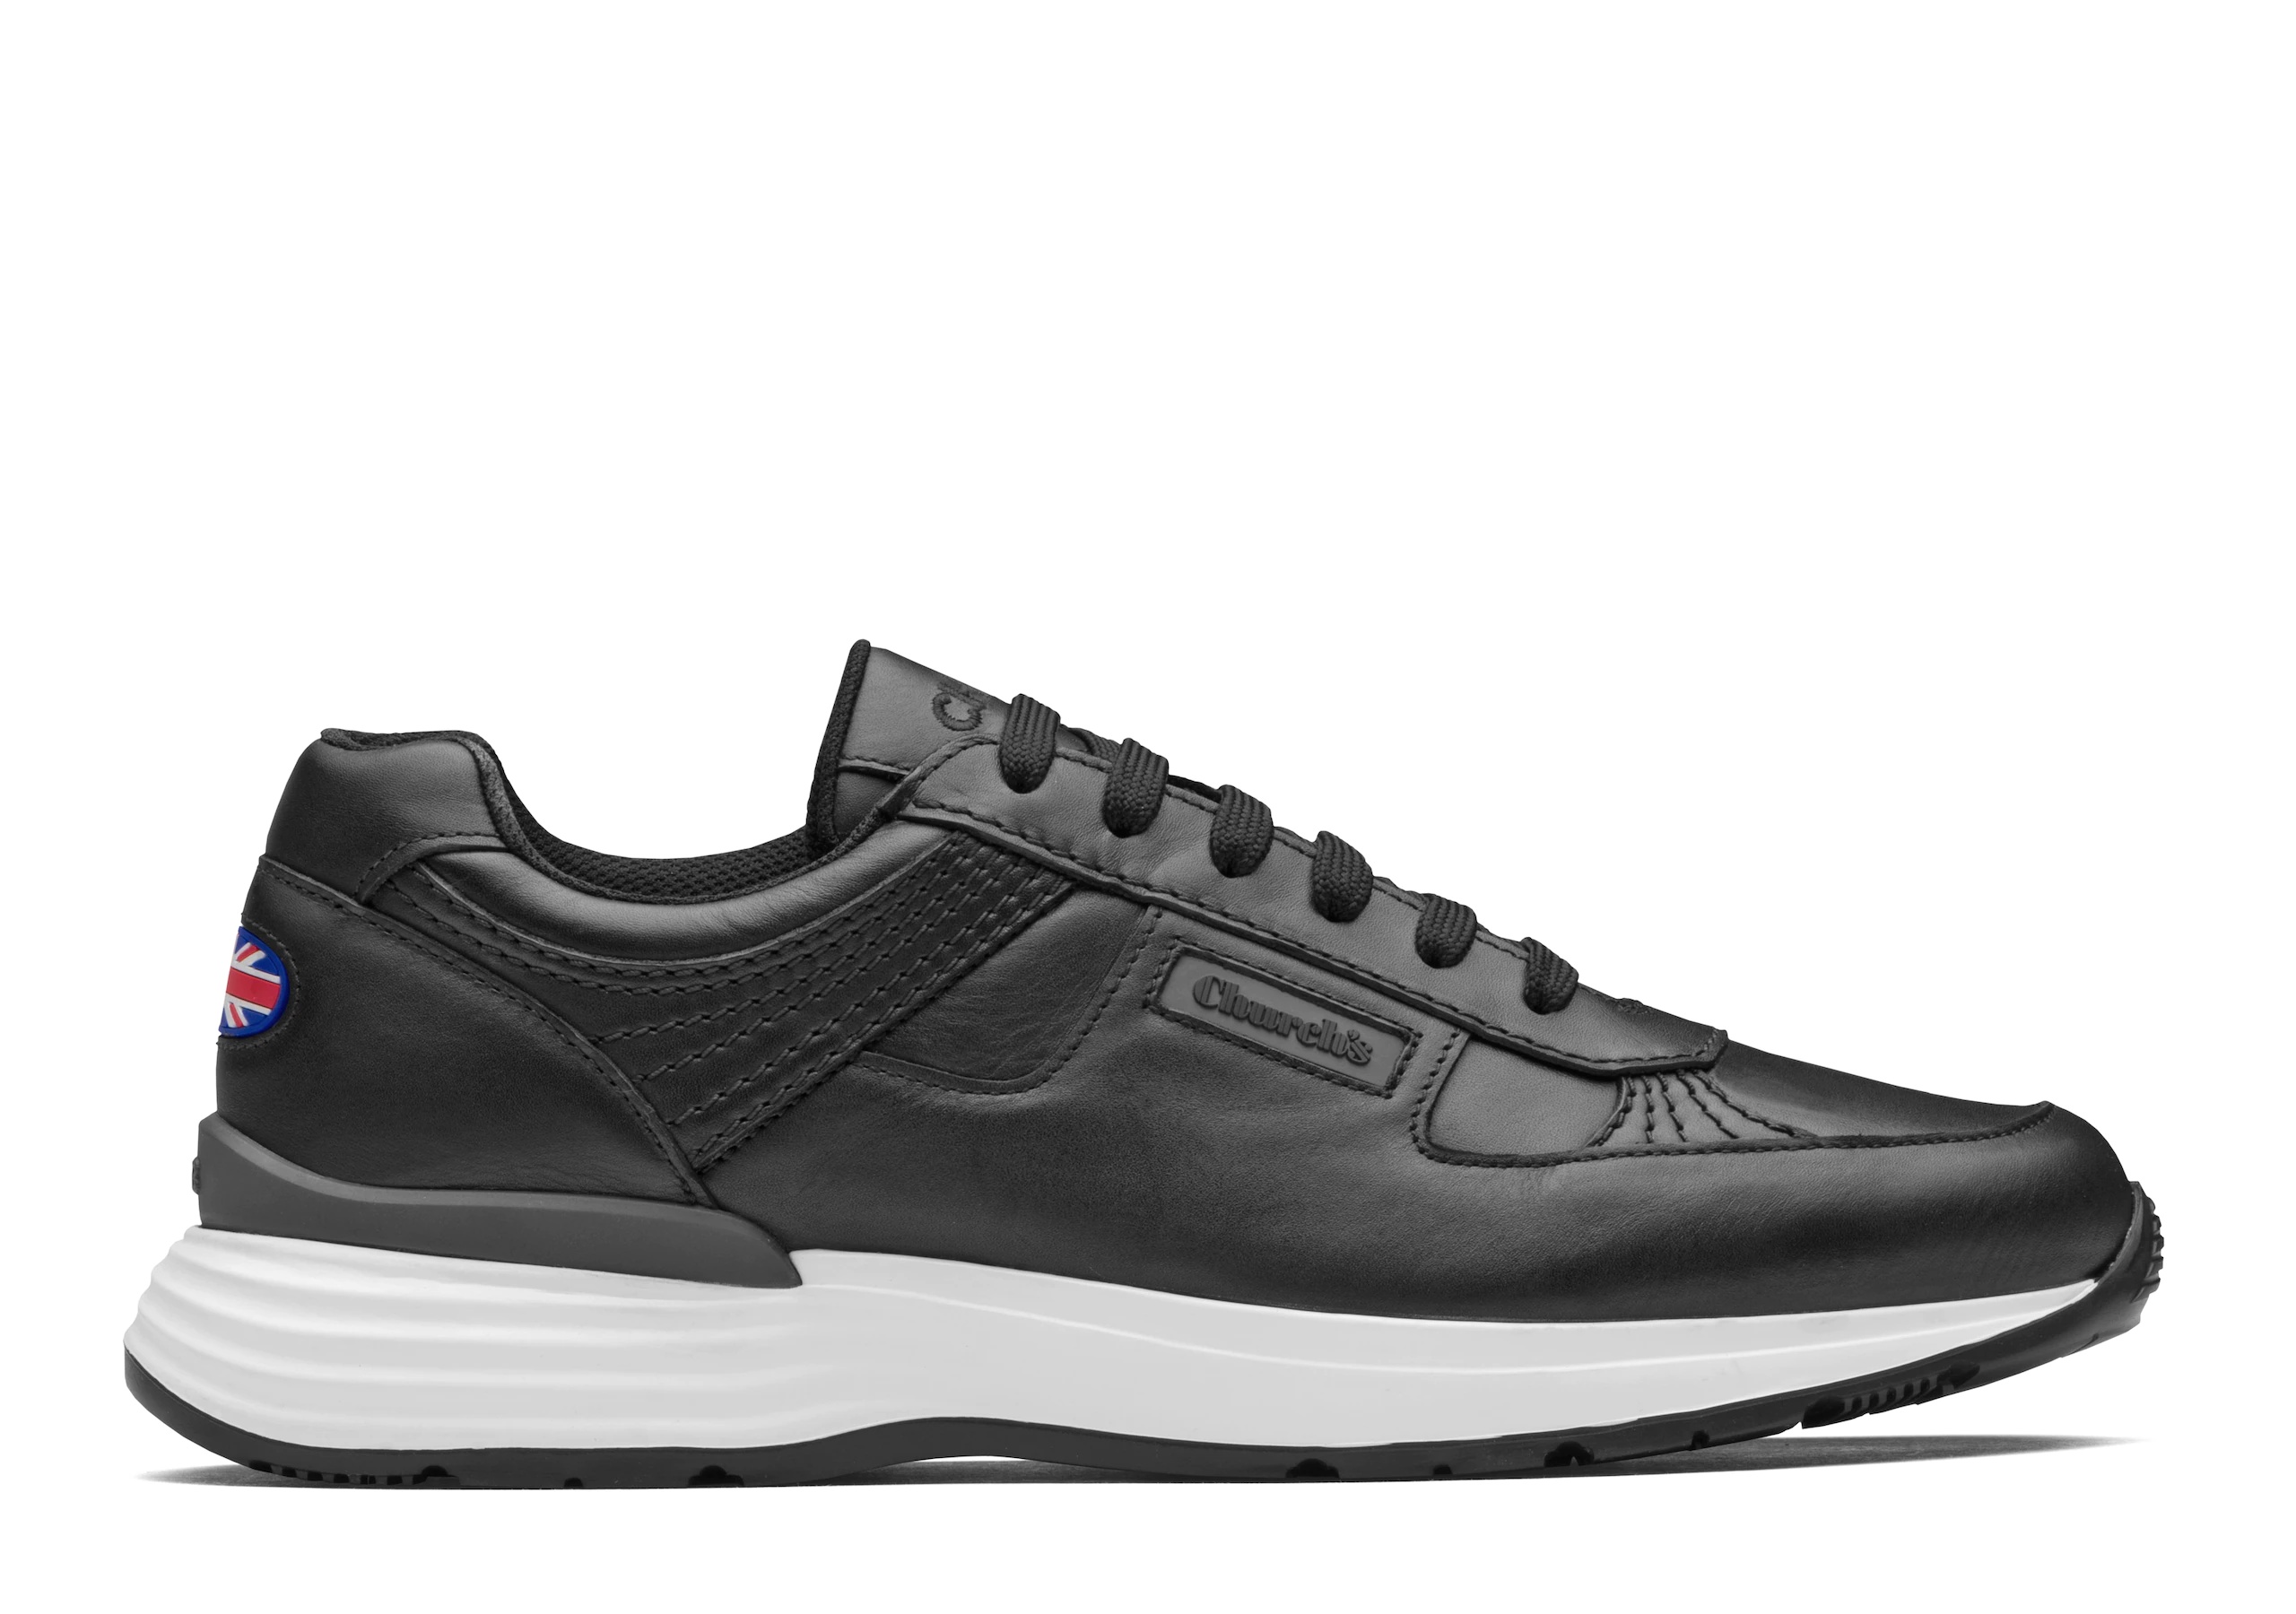 Ch873
Plume Calf Leather Retro Sneaker Black - 1